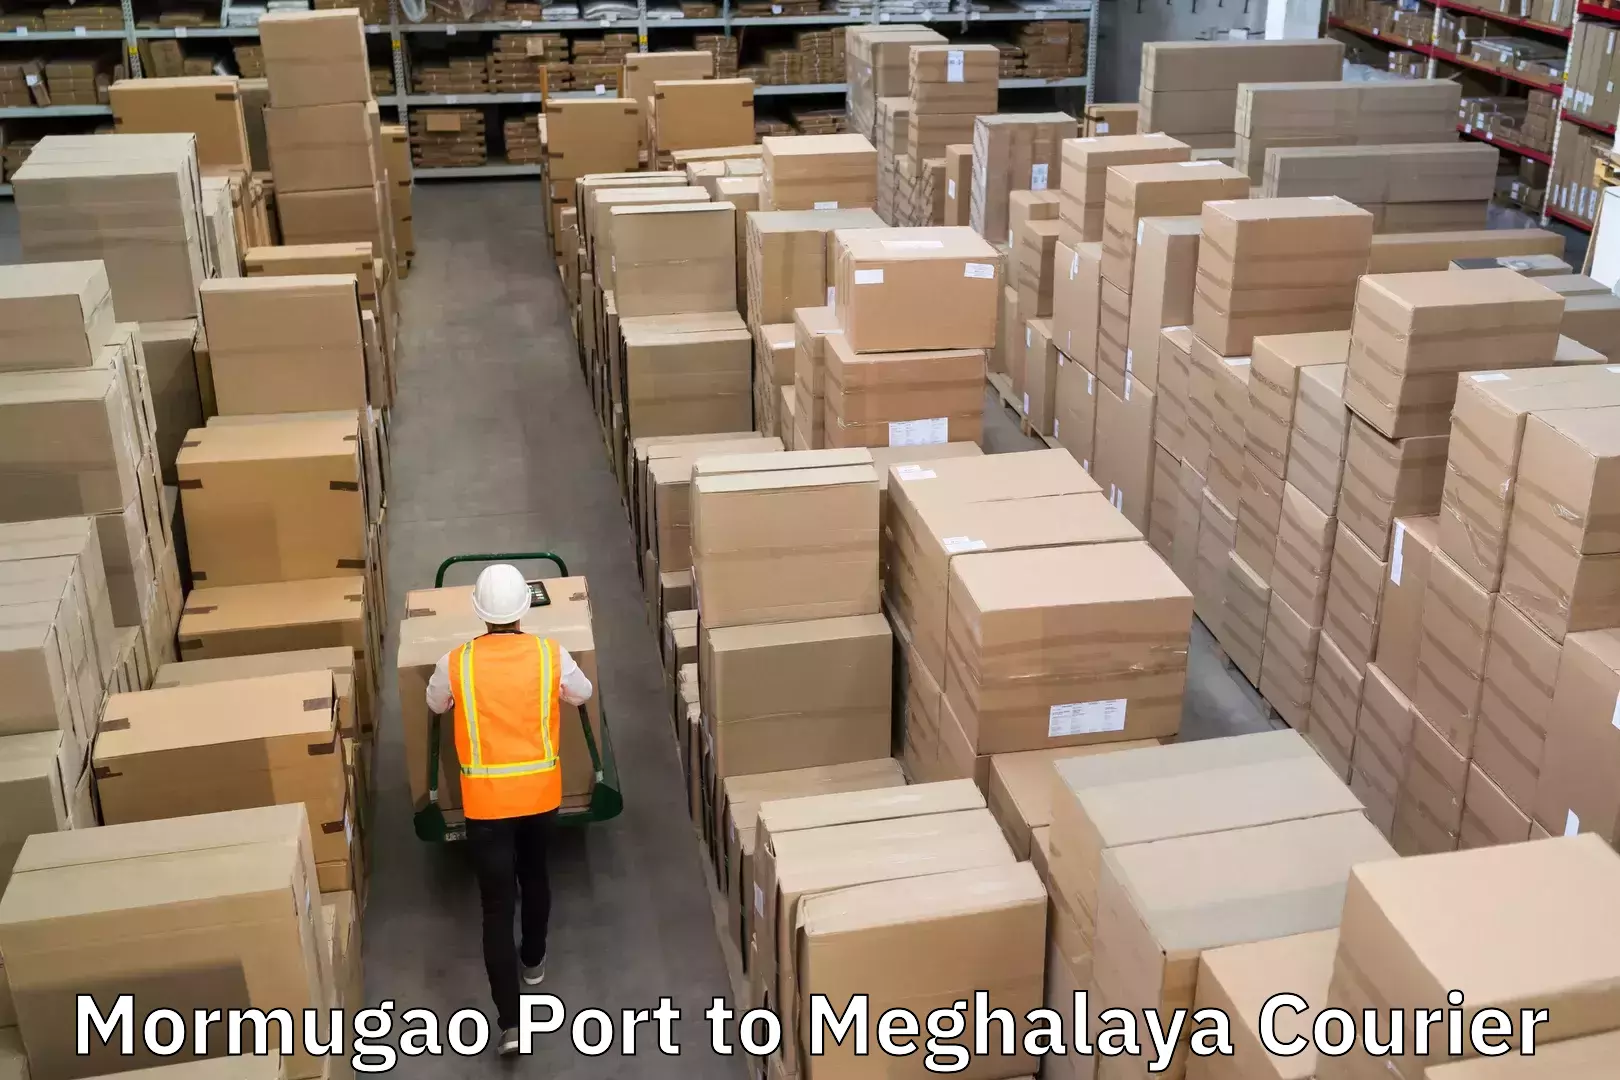 Urgent courier needs Mormugao Port to Meghalaya